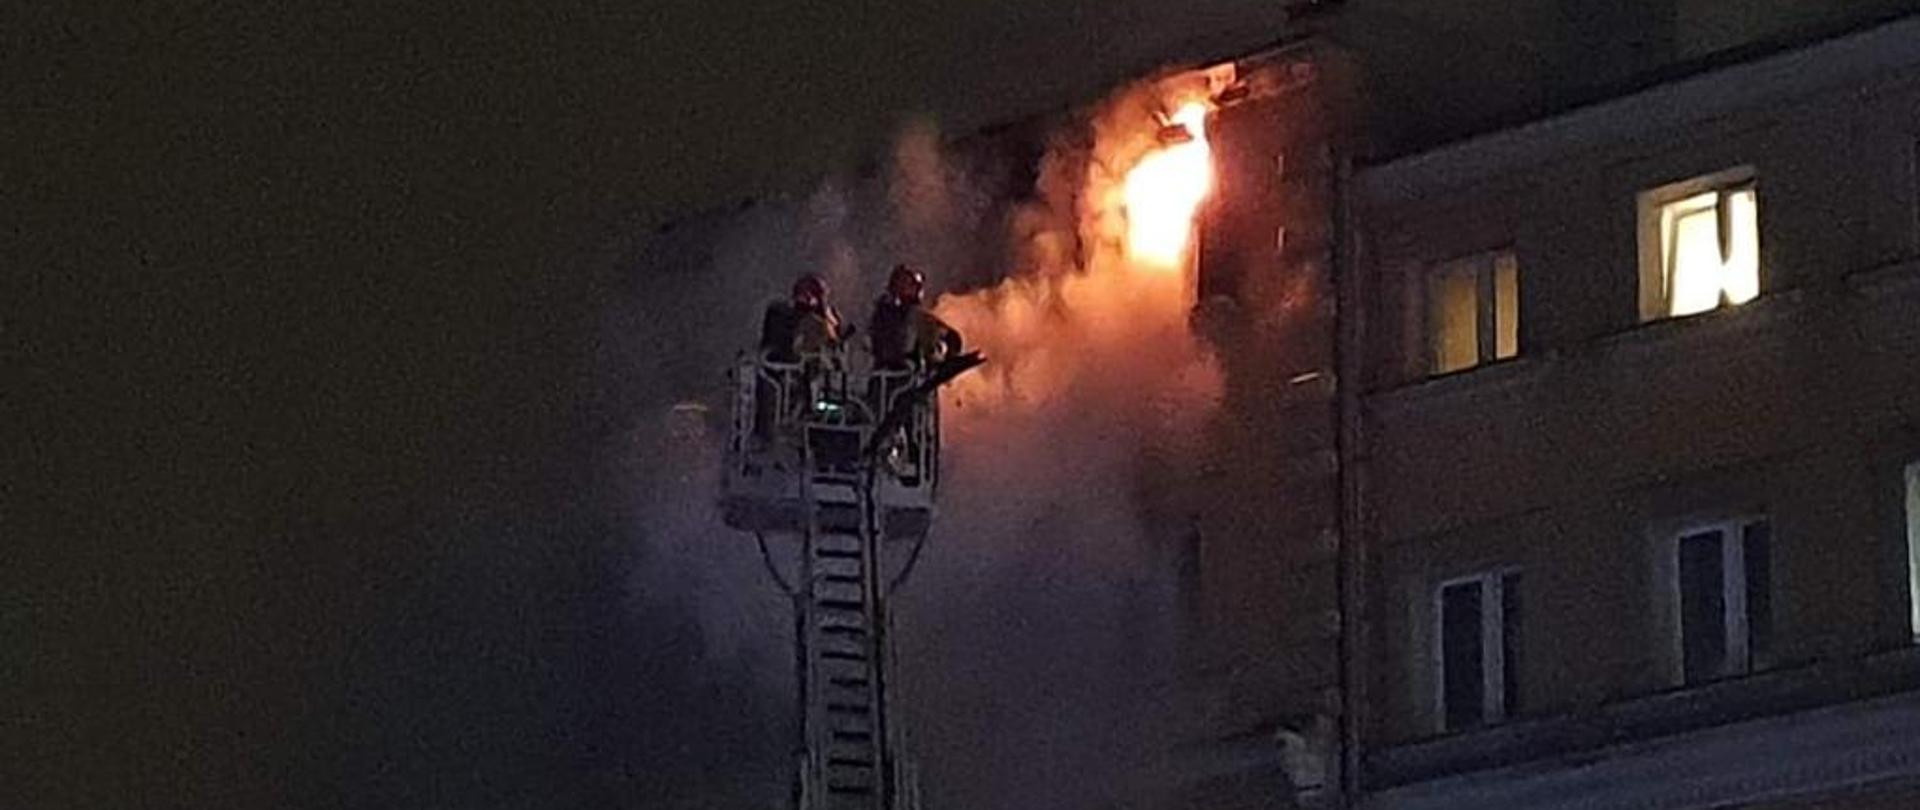 Na zdjęciu widać budynek, z jednego okna na ostatniej kondygnacji wydobywają się płomienie. Przed budynkiem widać wysunięta drabinę mechaniczną z koszem w którym znajduje się dwóch strażaków